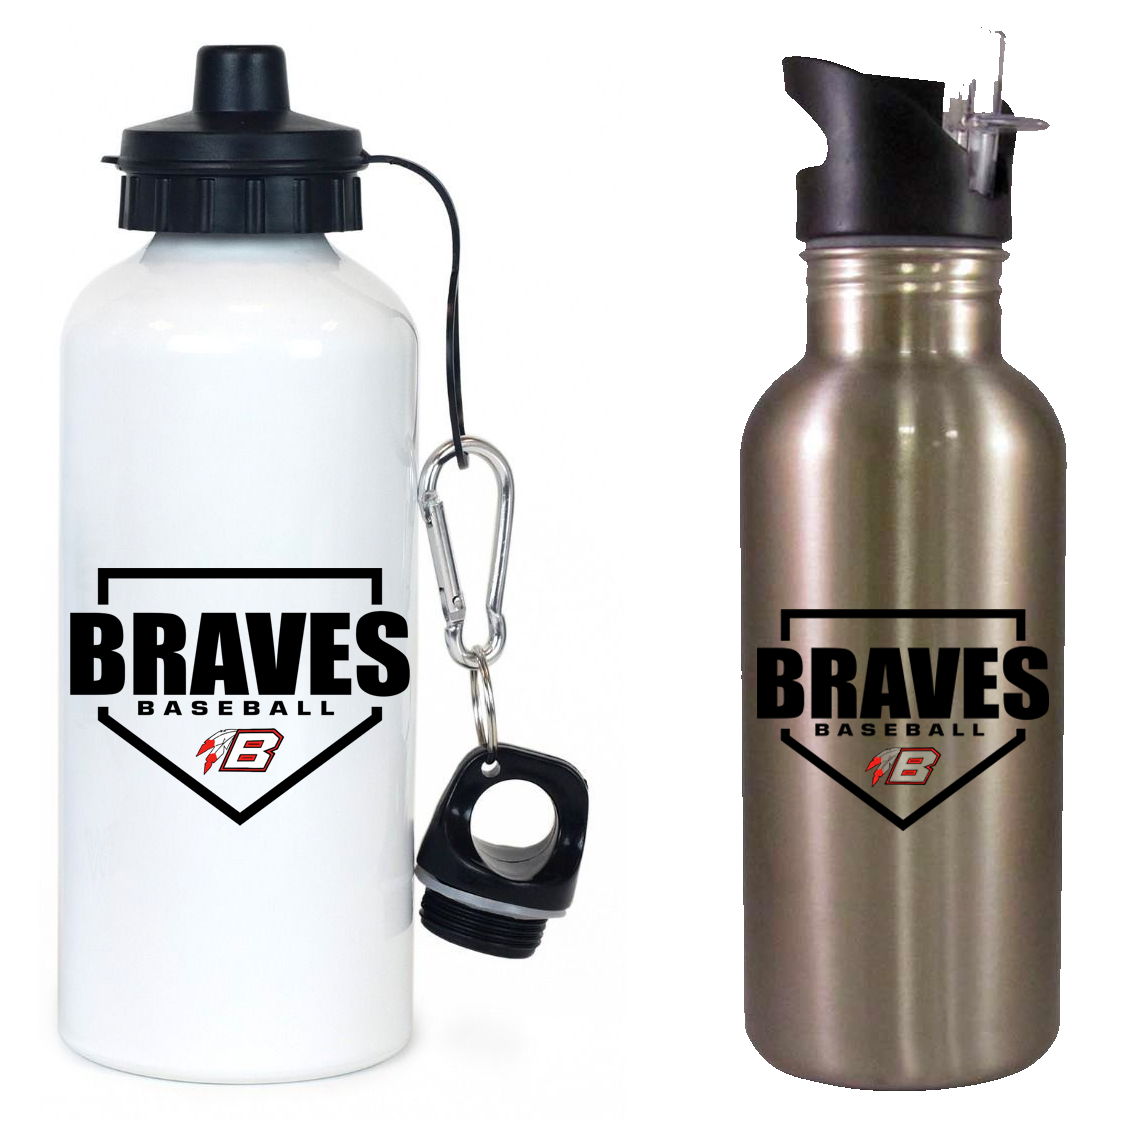 Braves Youth Baseball Team Water Bottle